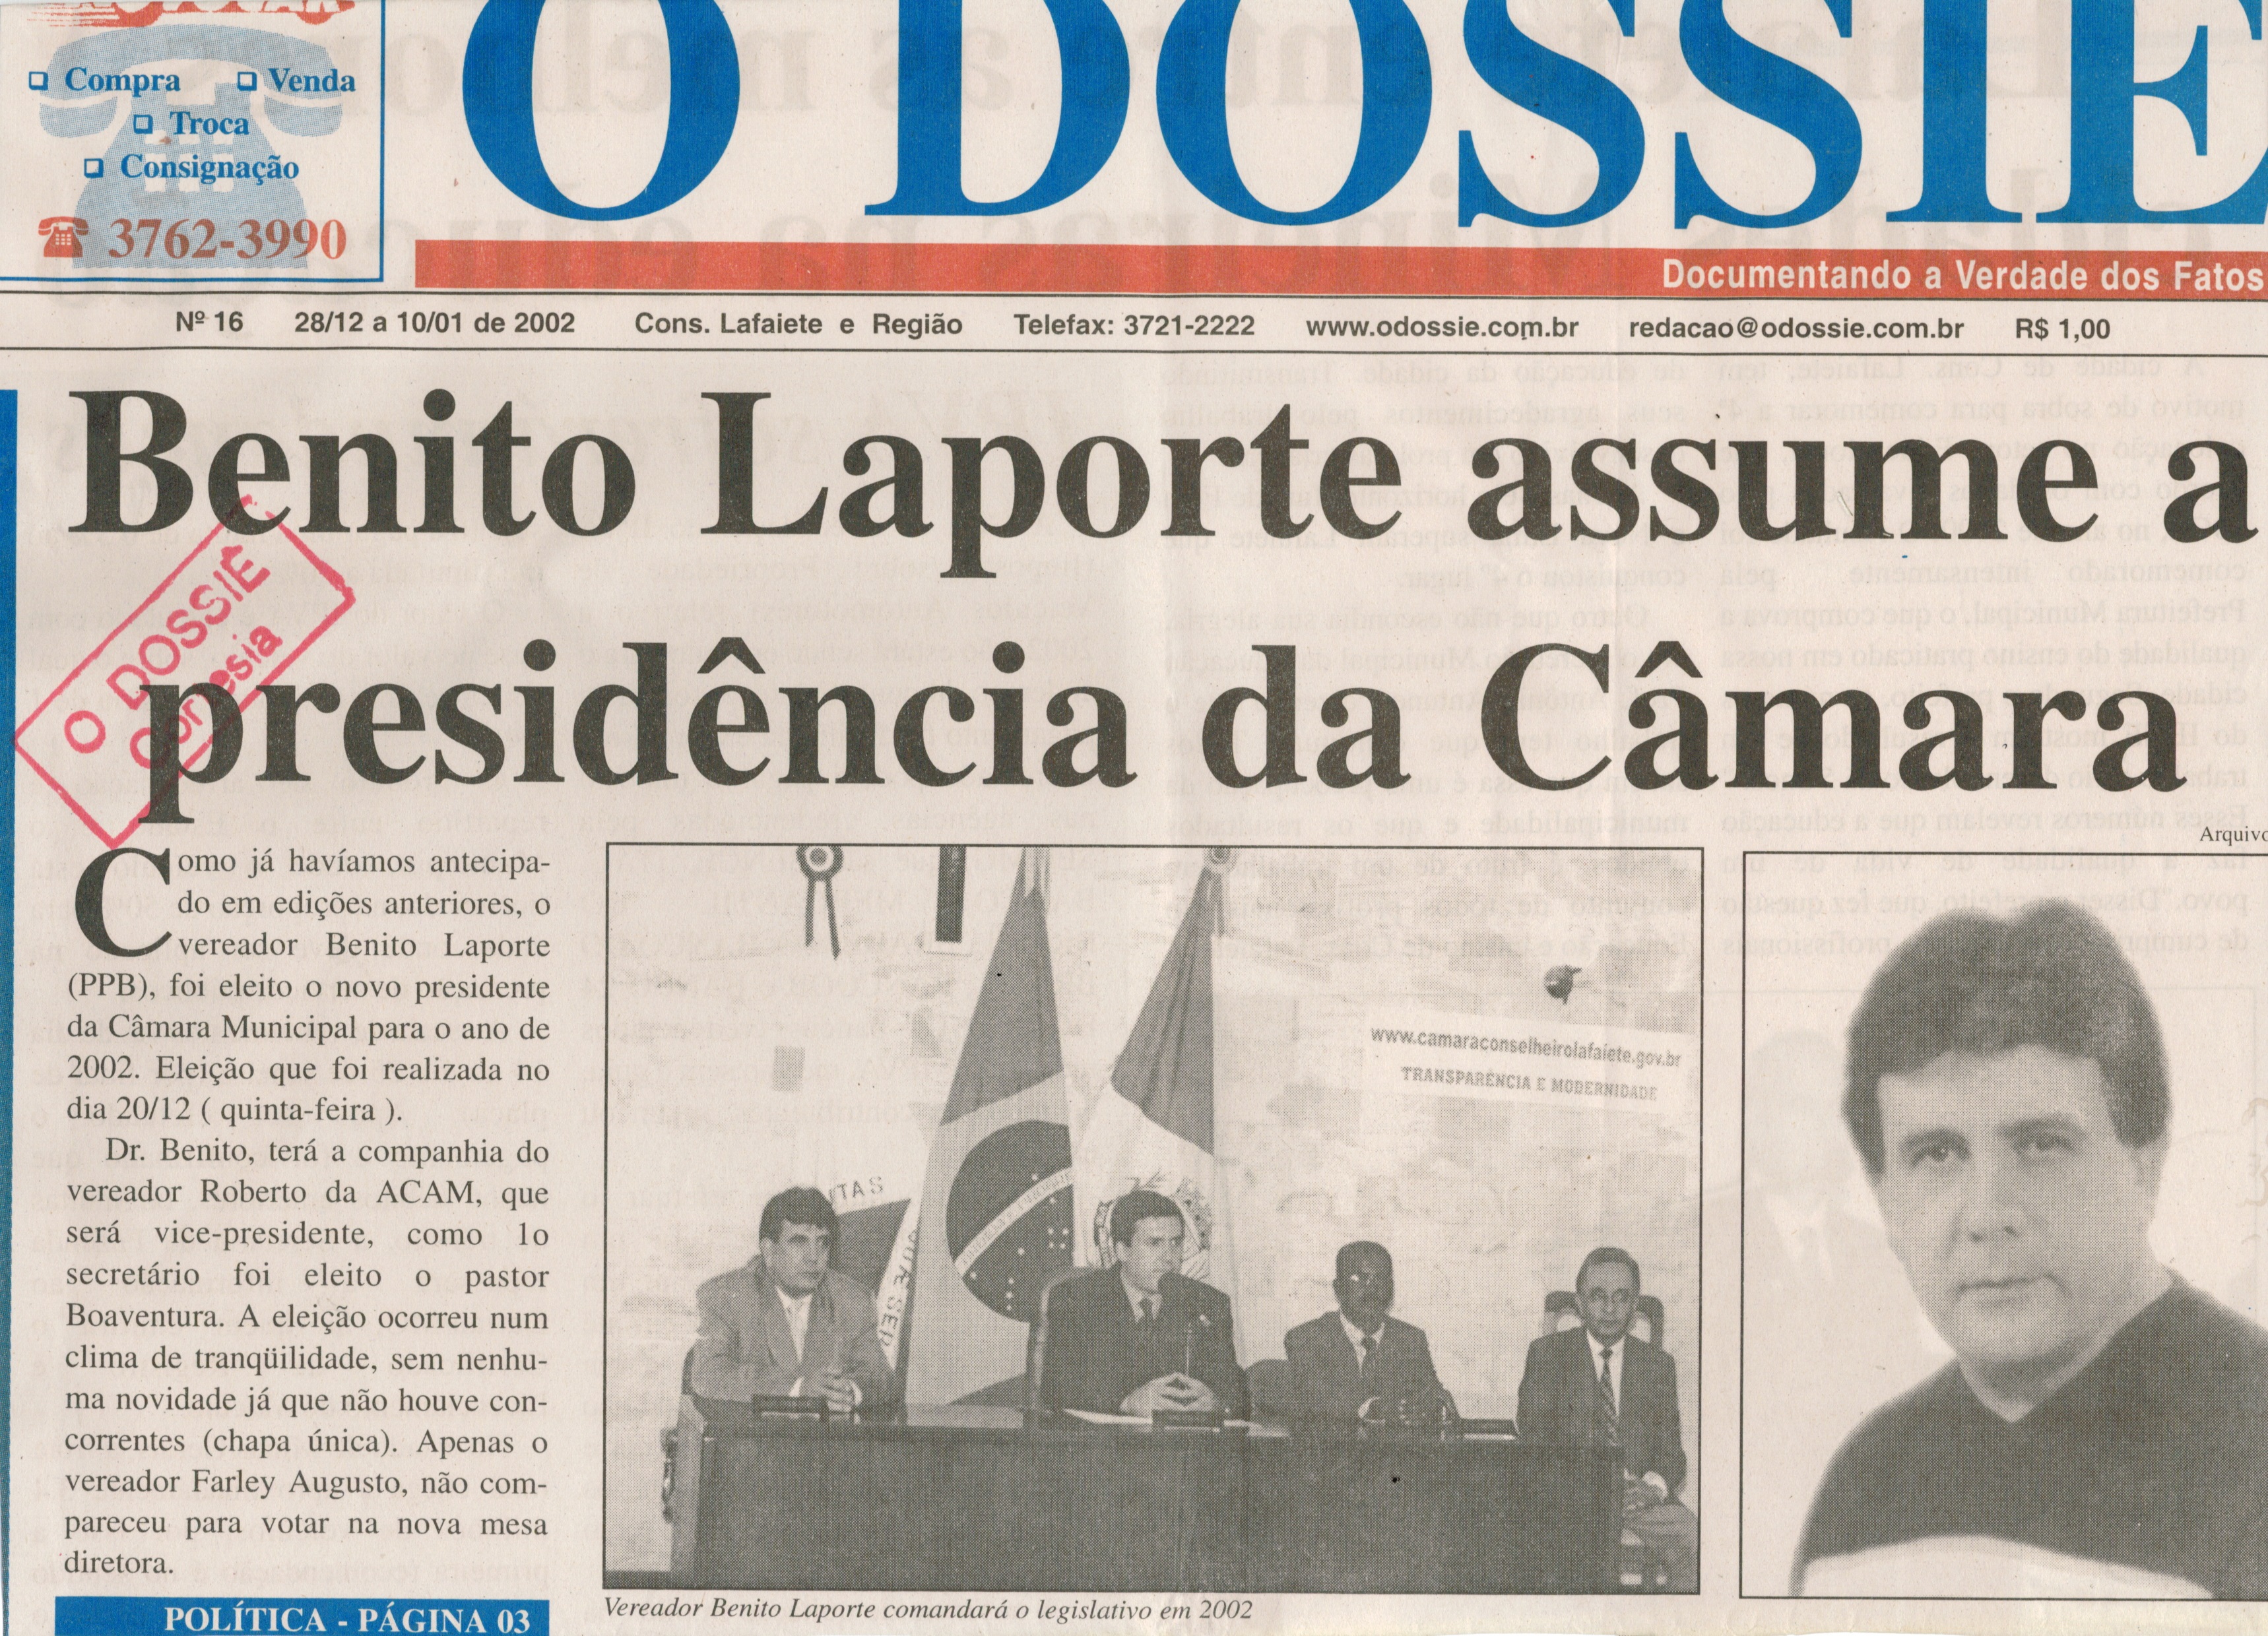 Benito Laporte assume presidência da Câmara. Jornal O Dossiê, Conselheiro Lafaiete, 28 dez. 2001 a 10 jan. 2002, 16ª ed., p. 1. 